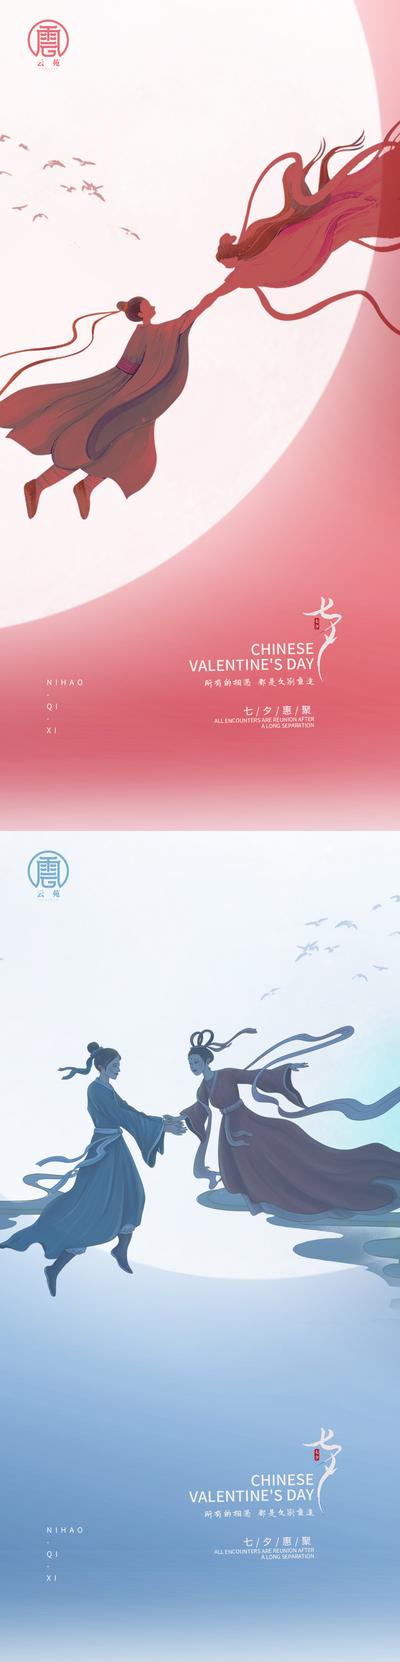 南门网 海报 中国传统节日 七夕 情人节 牛郎织女 鹊桥 系列